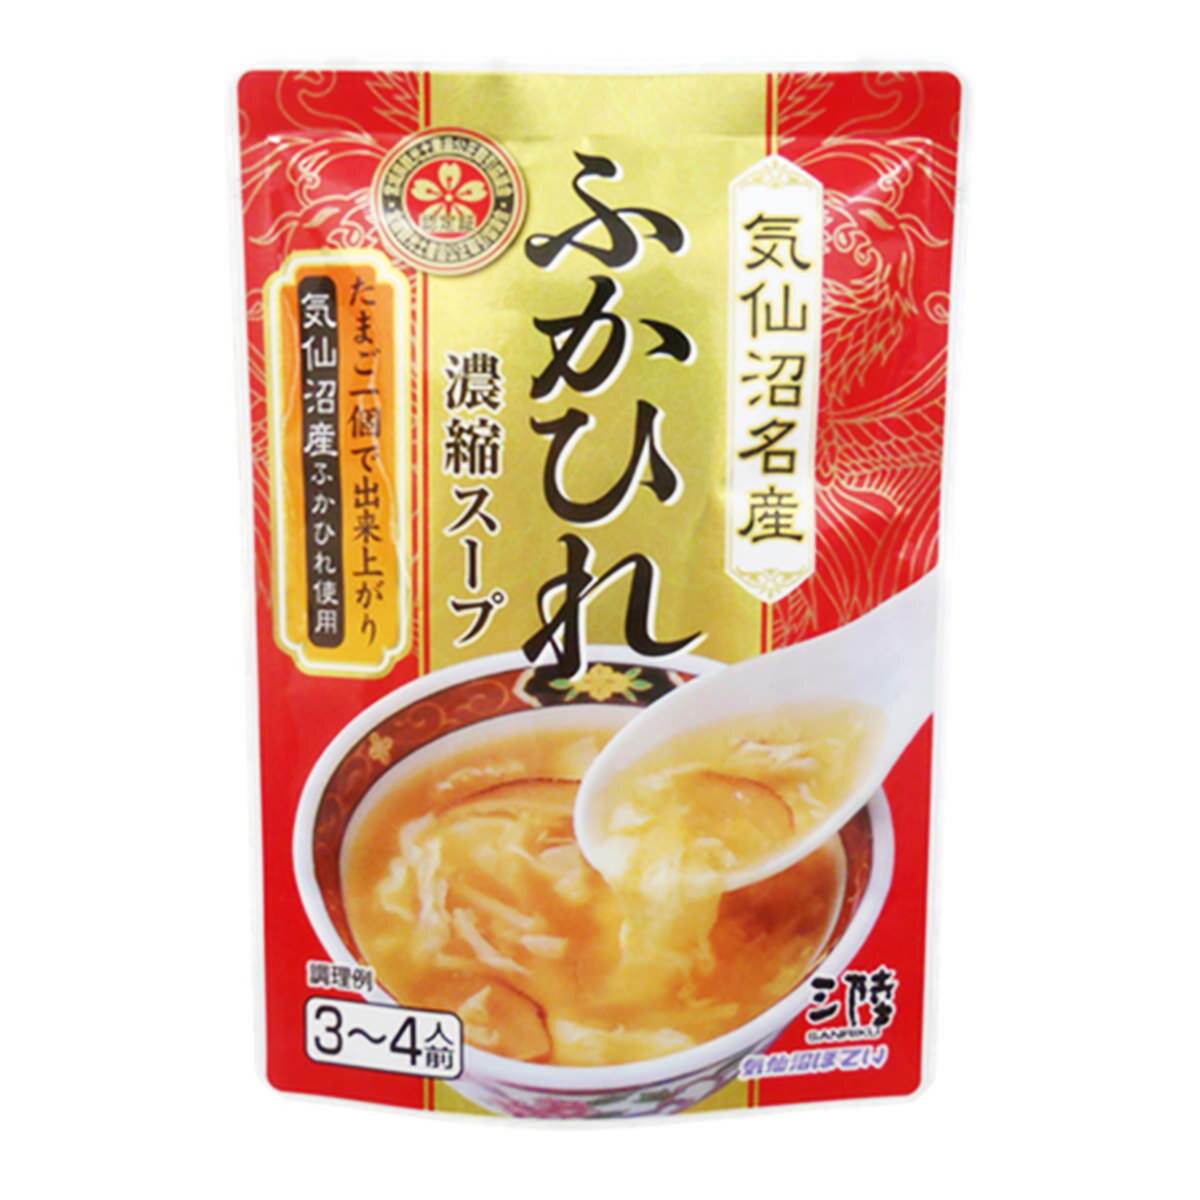 ふかひれ濃縮スープ 12個入 セット スープ 惣菜 調味料...